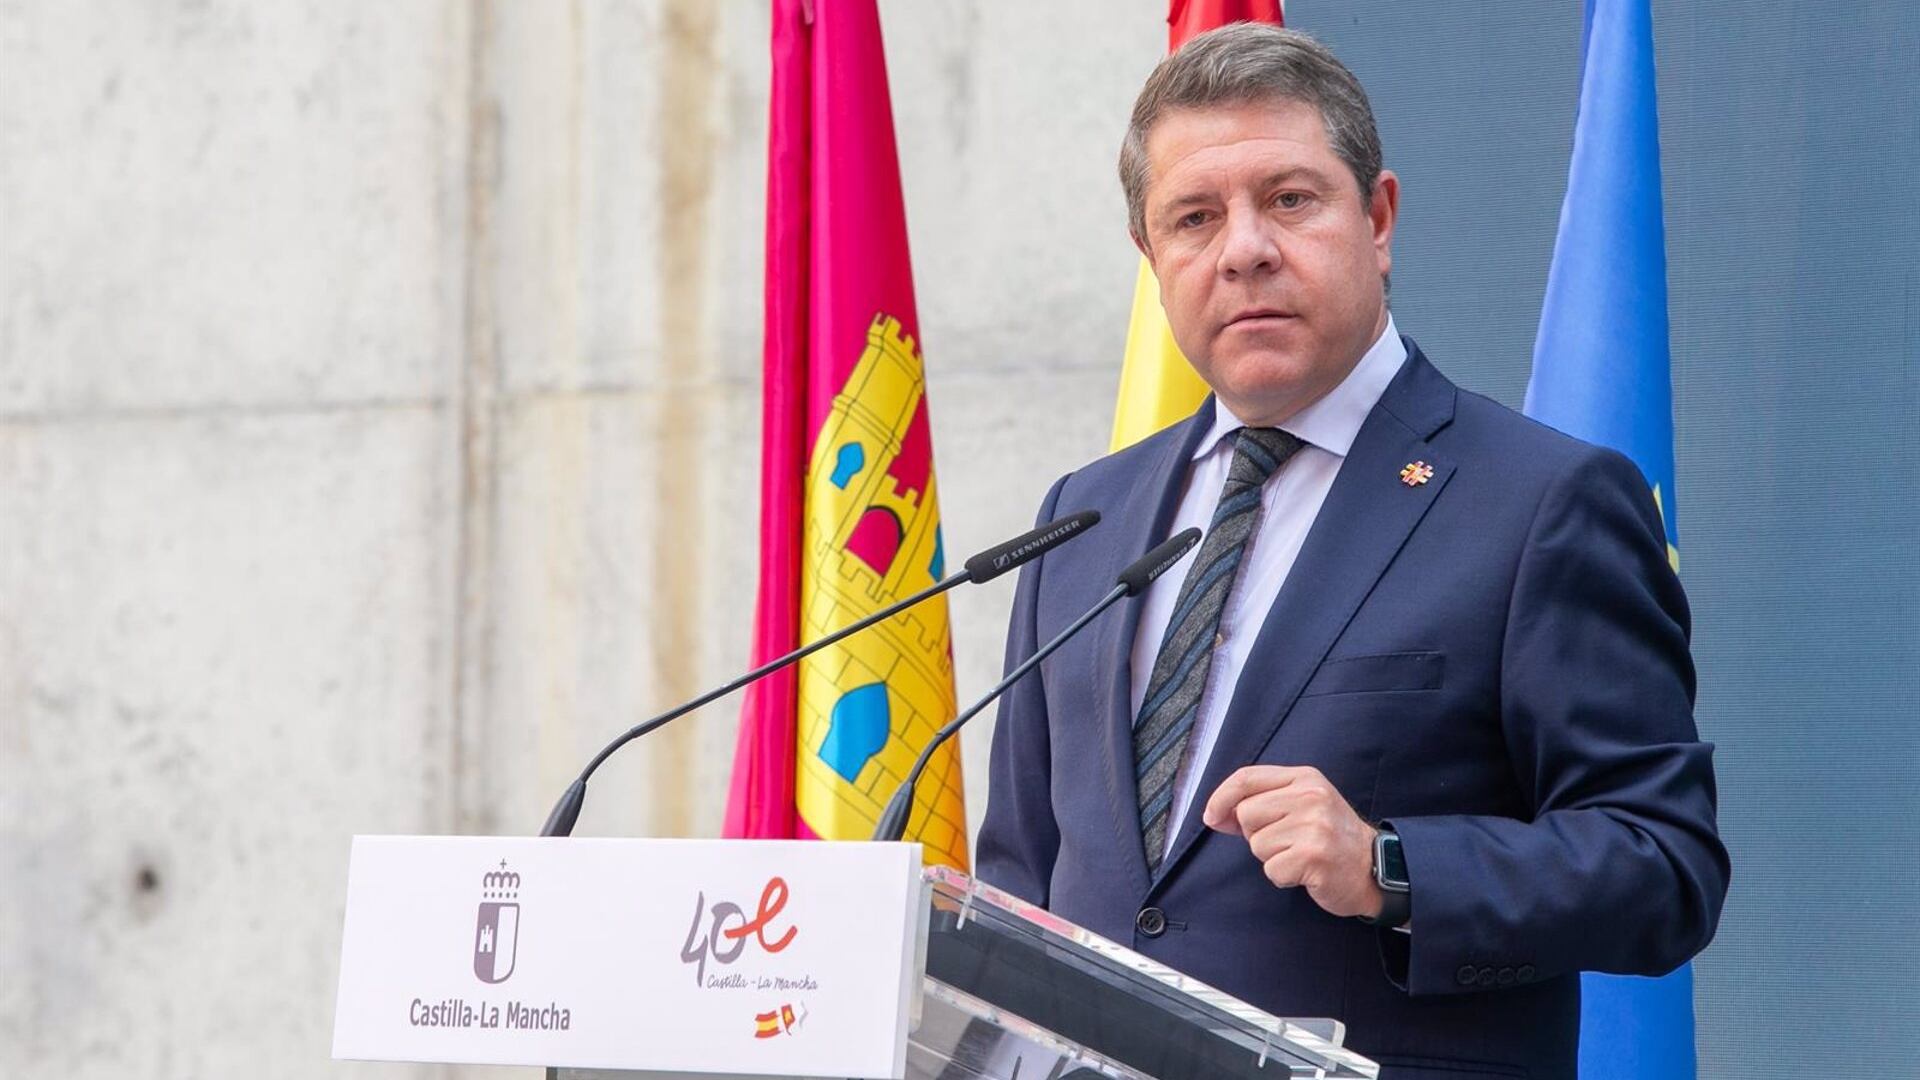 Page se enfrenta a Ferraz y sugiere a Sánchez un adelanto electoral: “Esto se resuelve en términos electorales”